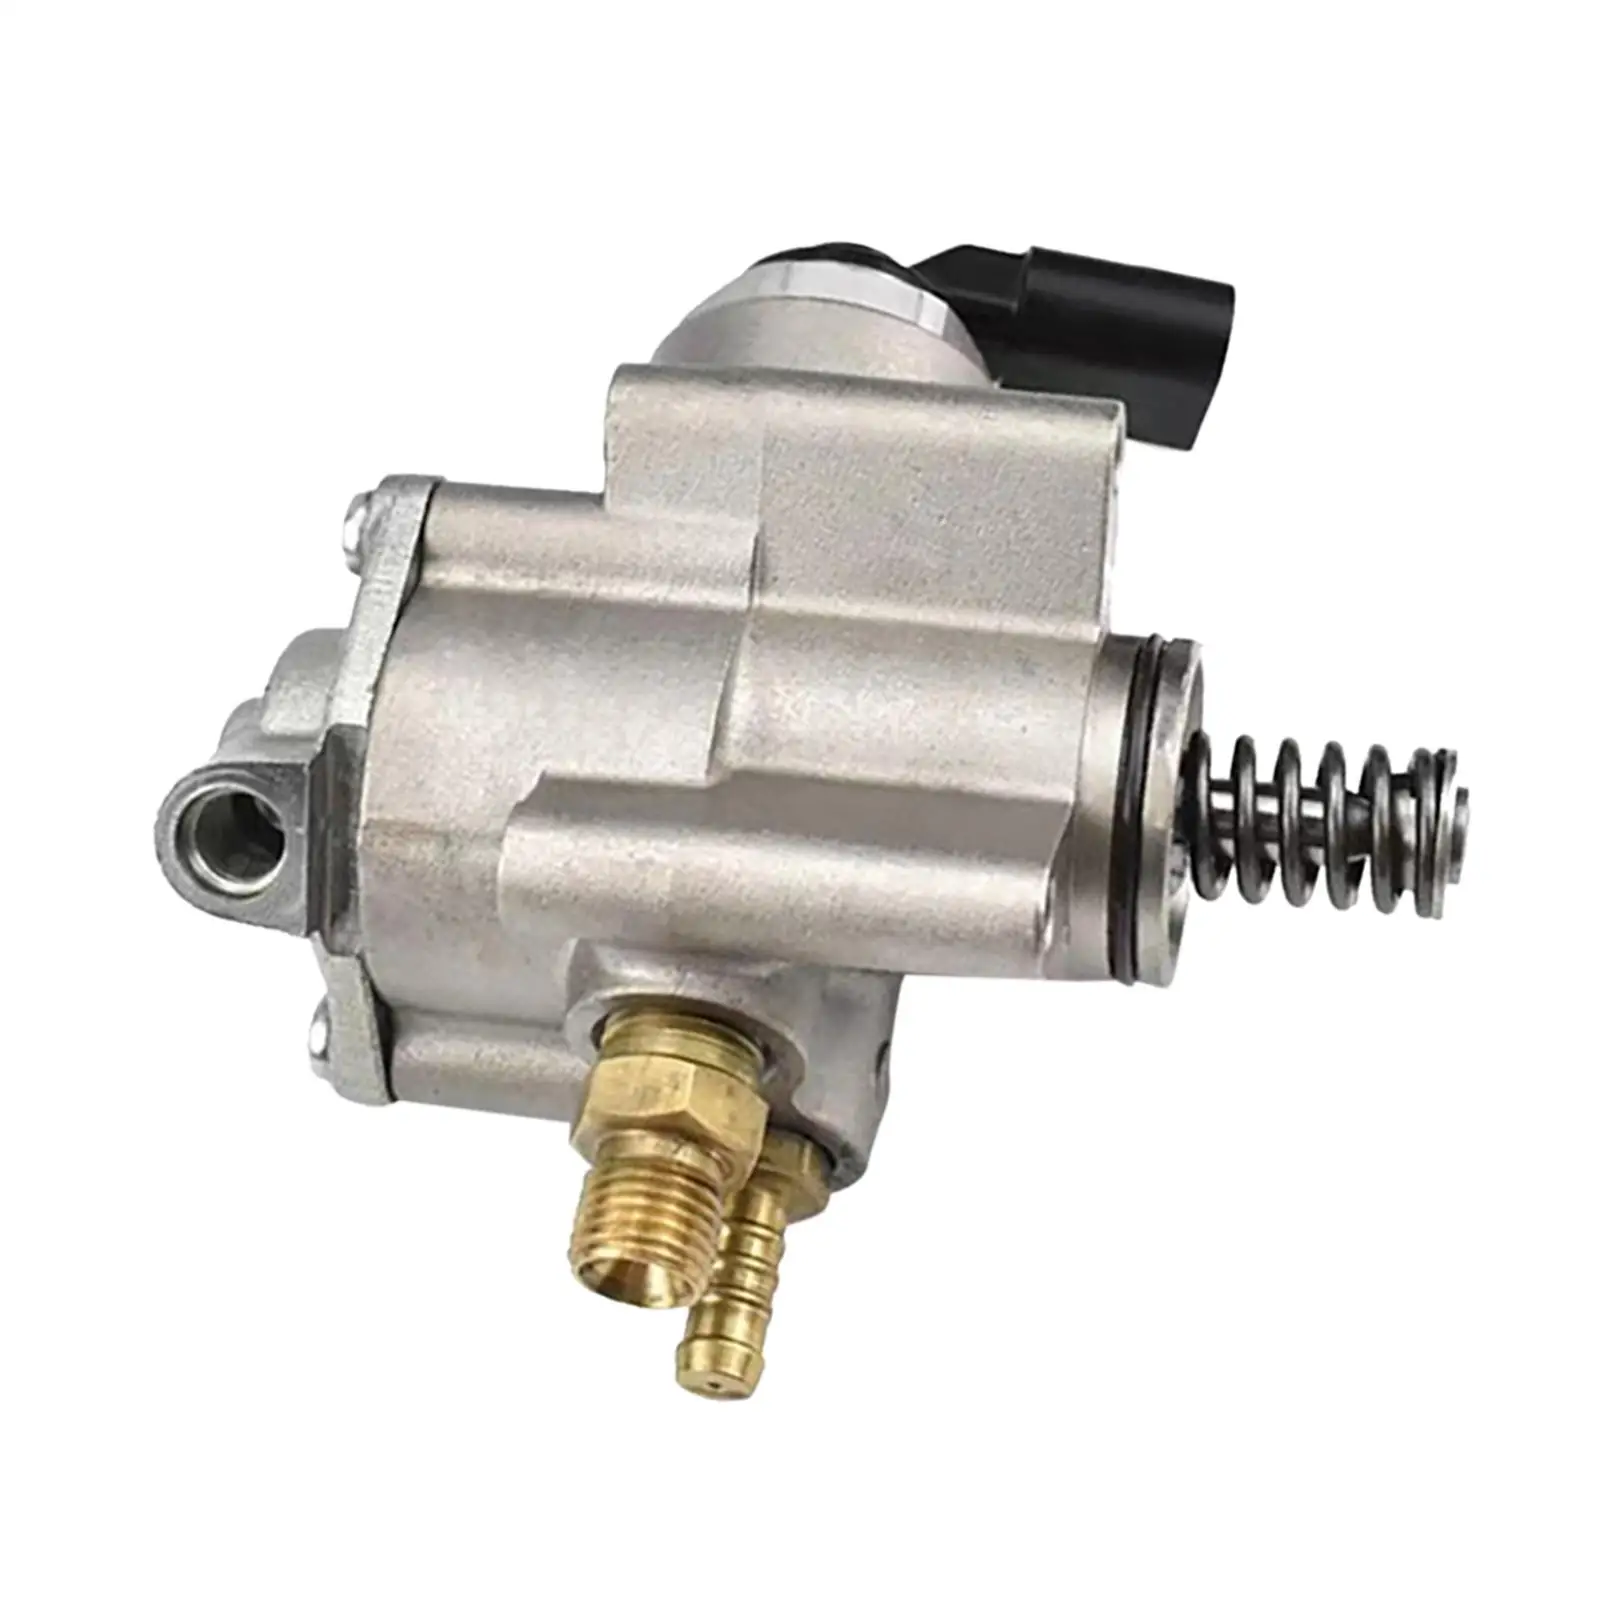 High Pressure Fuel Pump Rail Injector for Audi 2.0 TFSI Engine 06F127025B 06F127025J HFS853102B HFS853A108 Parts